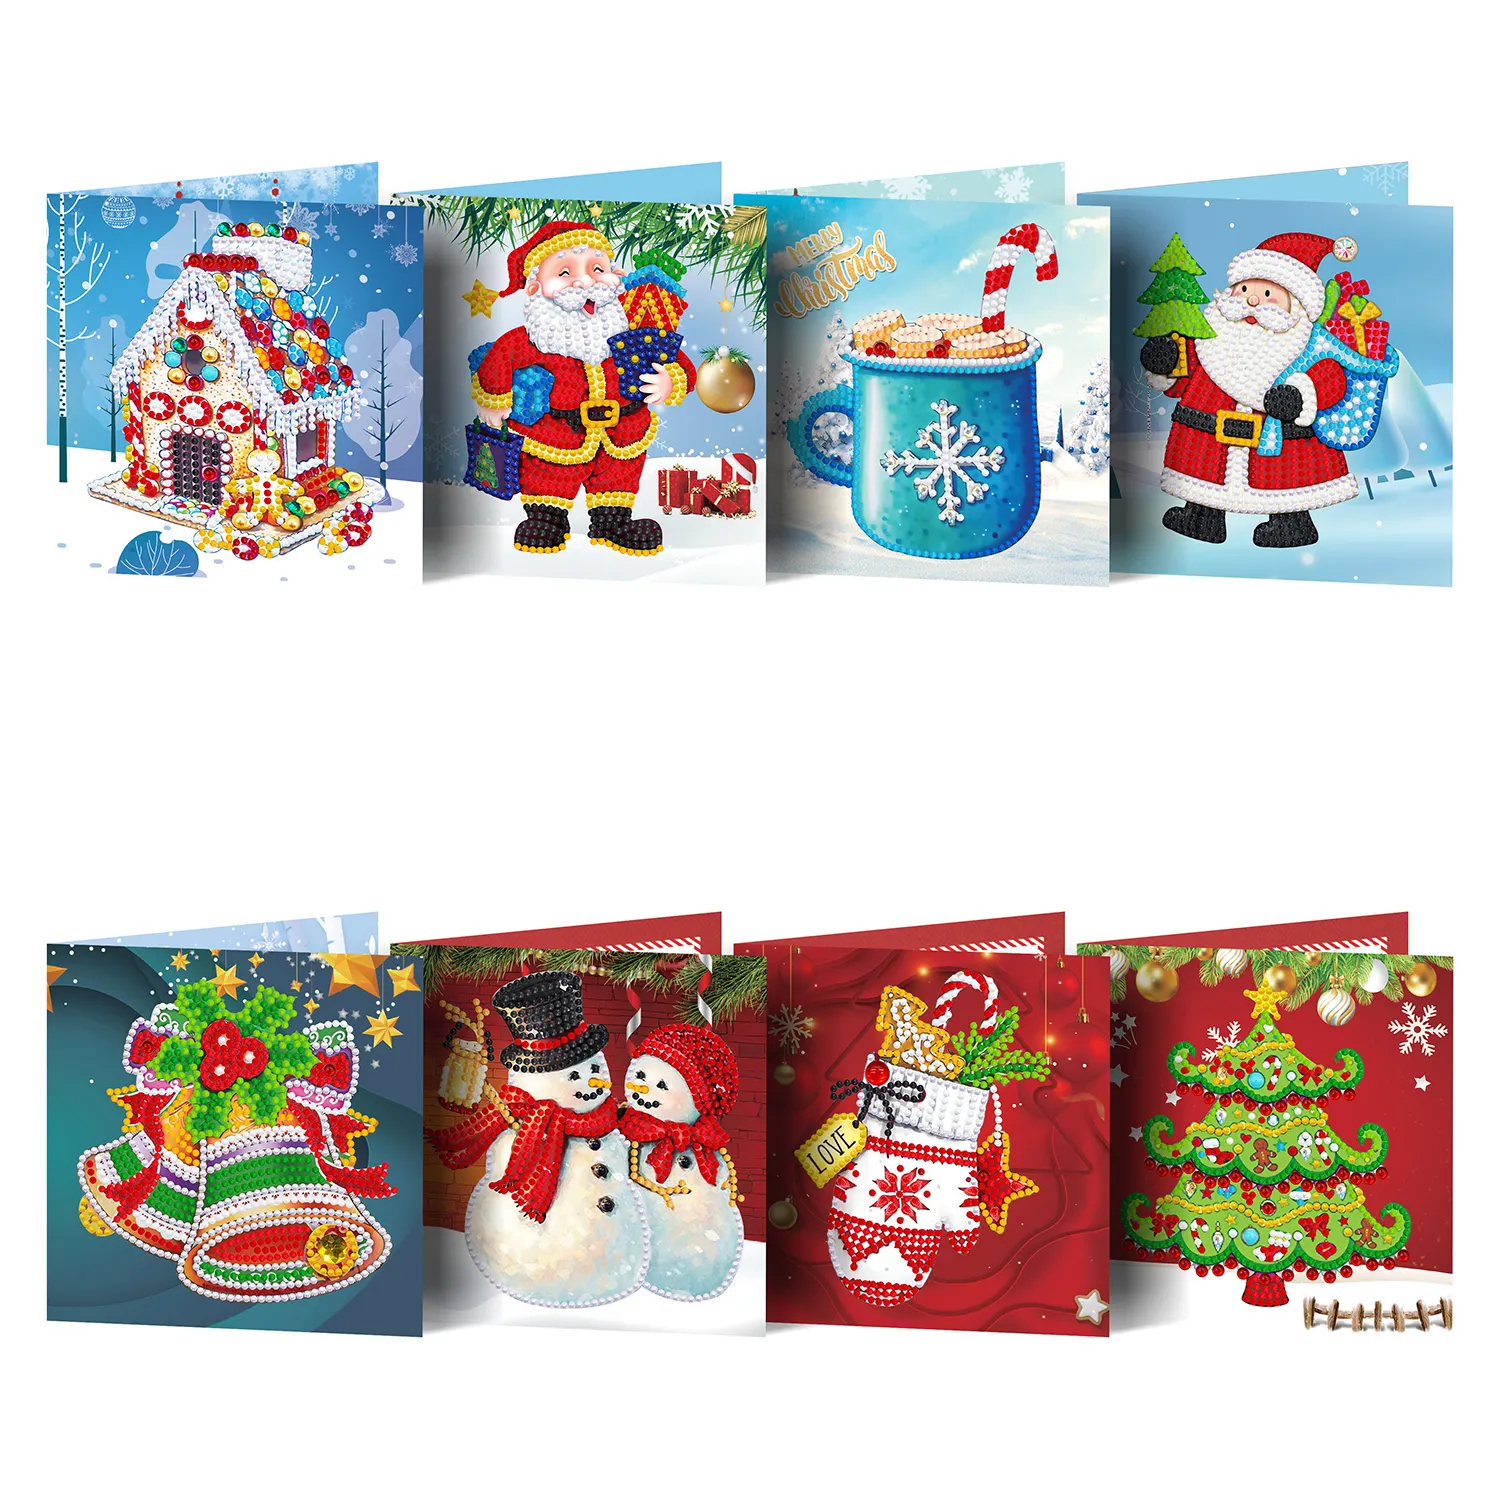 Nuevos productos 8 unids/set 3D tarjetas de felicitación de Navidad DIY manualidades de pintura de diamantes en kits de papel para niños y adultos